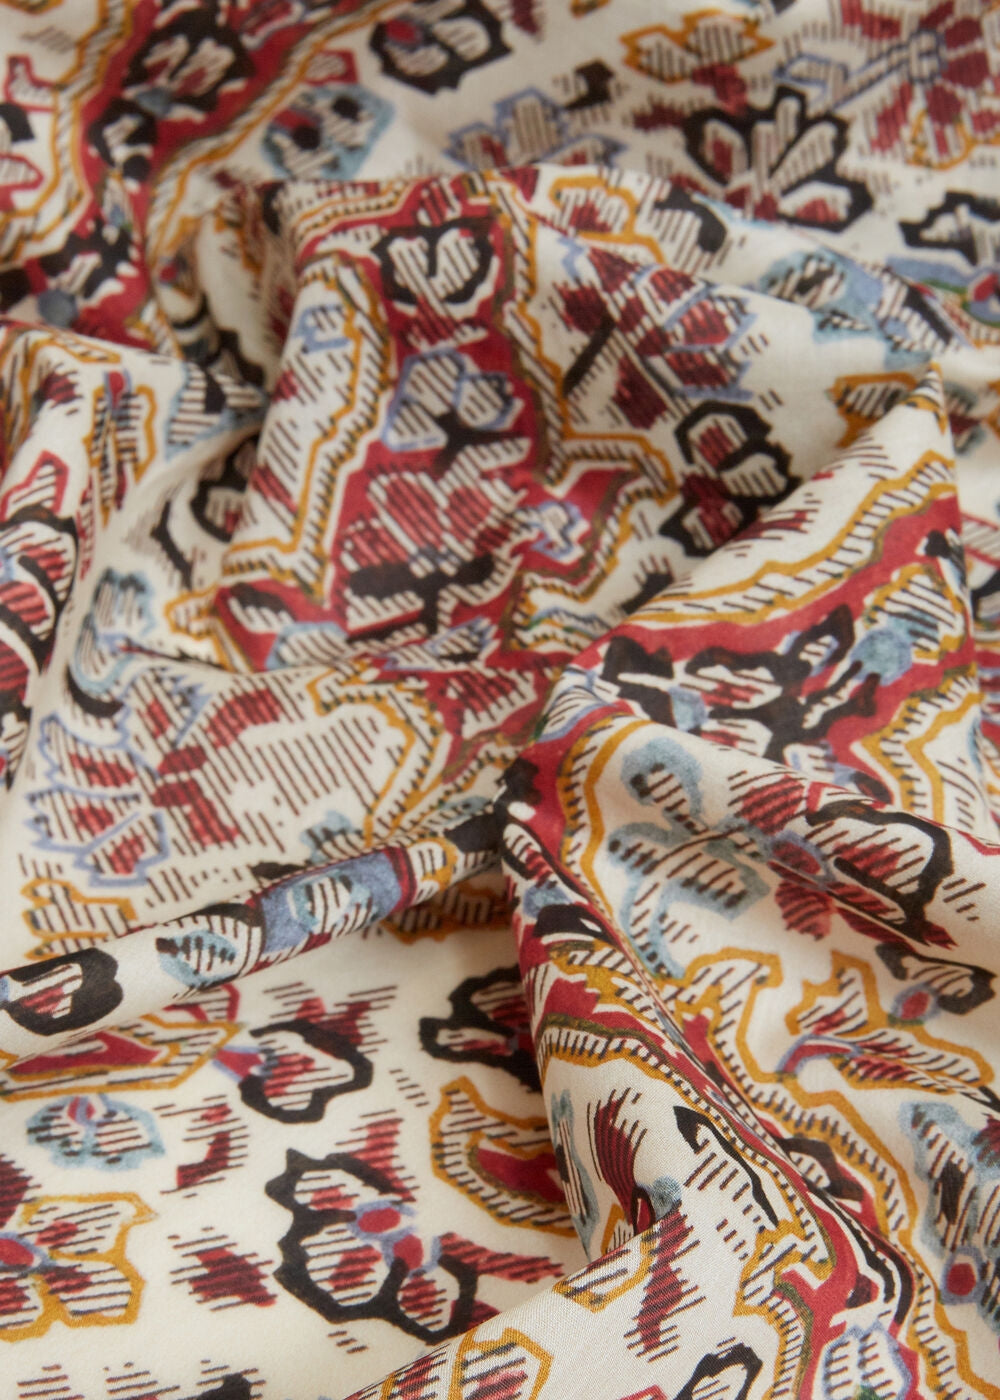 Designer Schal Damen online kaufen. ETRO Schal in leichter Baumwolle mit floralem Print. Exklusiver Damen Schal mit großem Format aus der neuen ETRO Milano Kollektion.